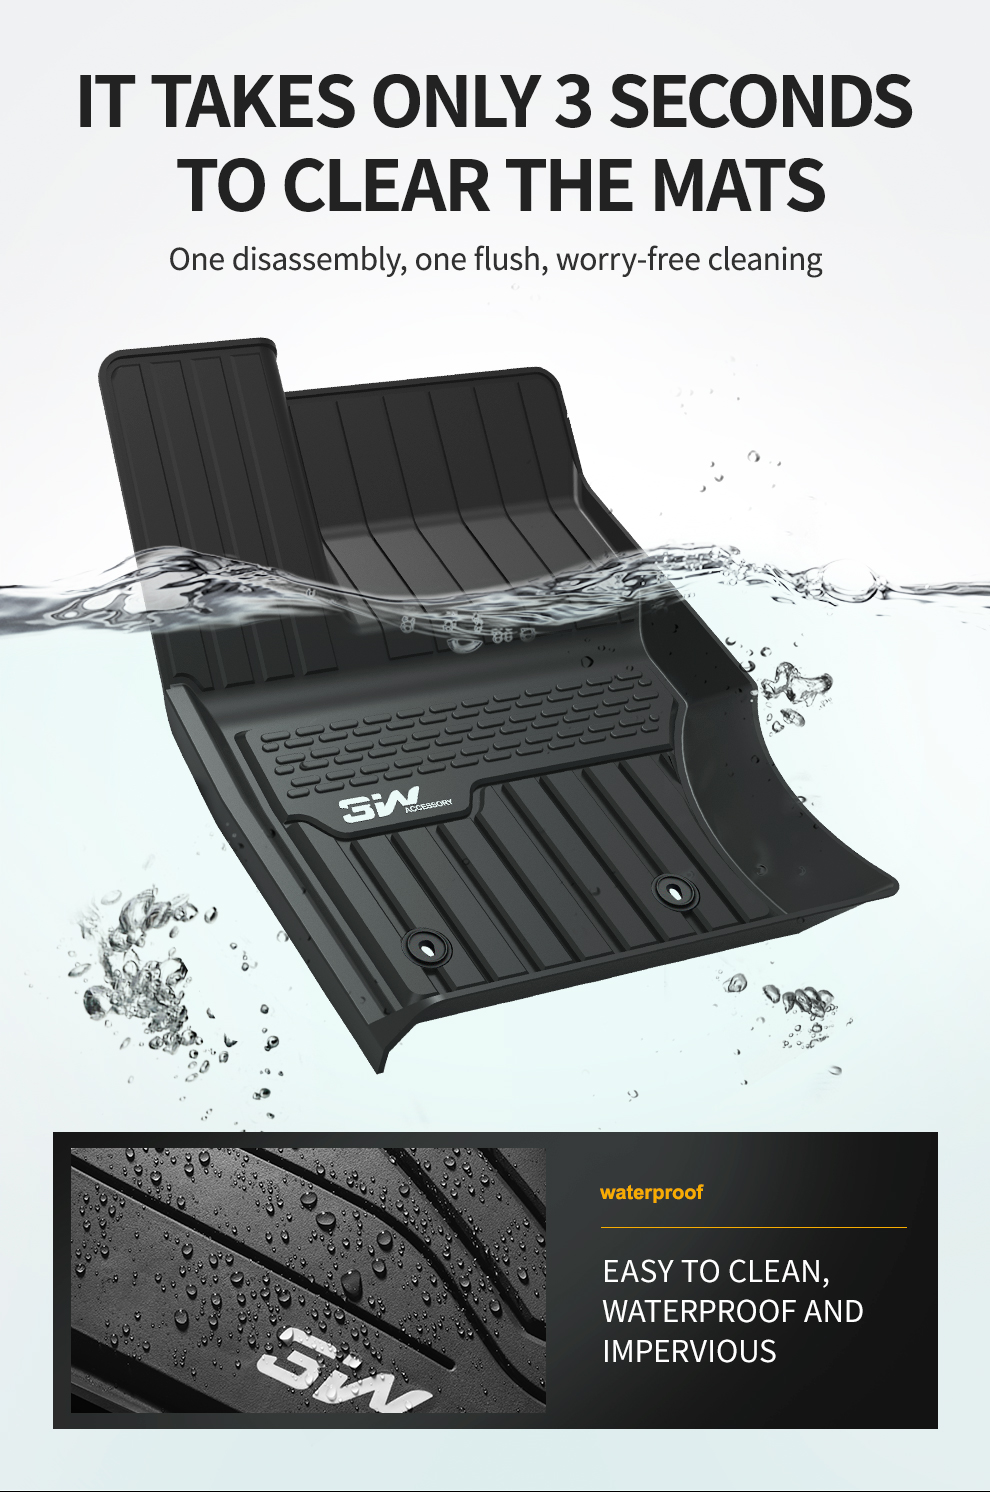 Thảm lót sàn xe ô tô dành cho LANDROVER VELAR 2016 - đến nay Nhãn hiệu Macsim 3W chất liệu nhựa TPE đúc khuôn cao cấp - màu đen